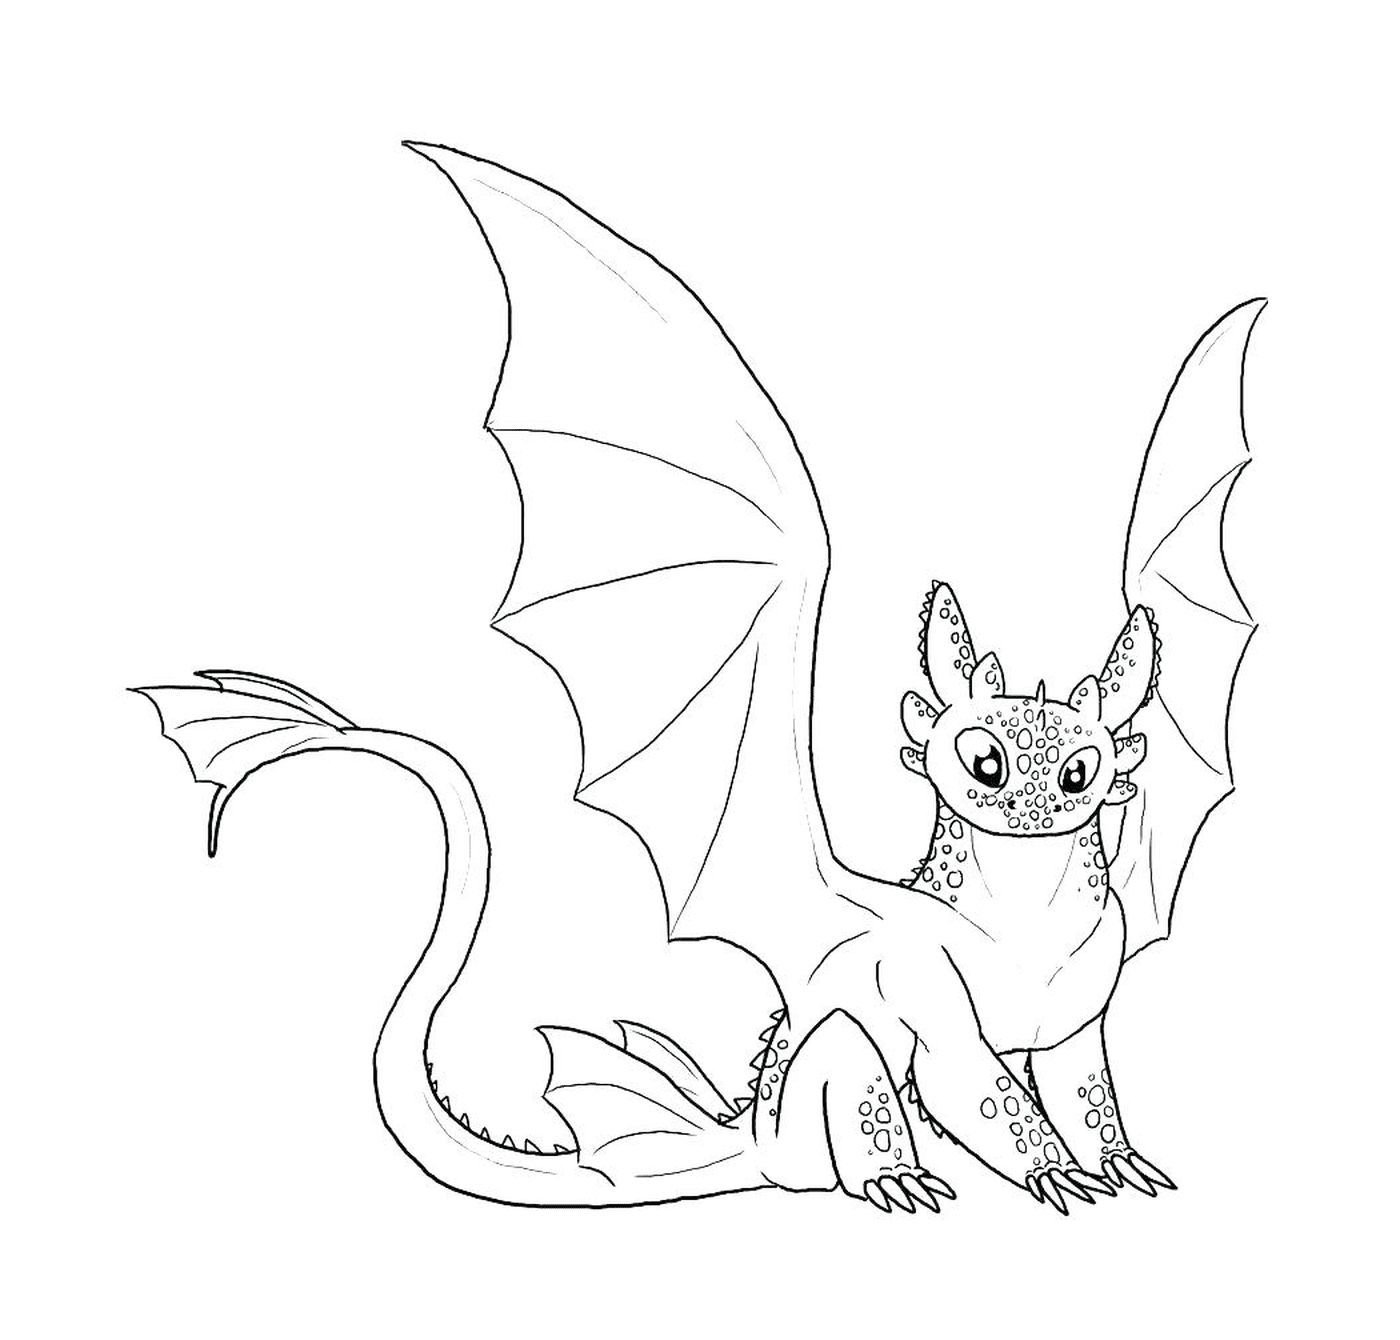   Toothless, un dragon mignon 